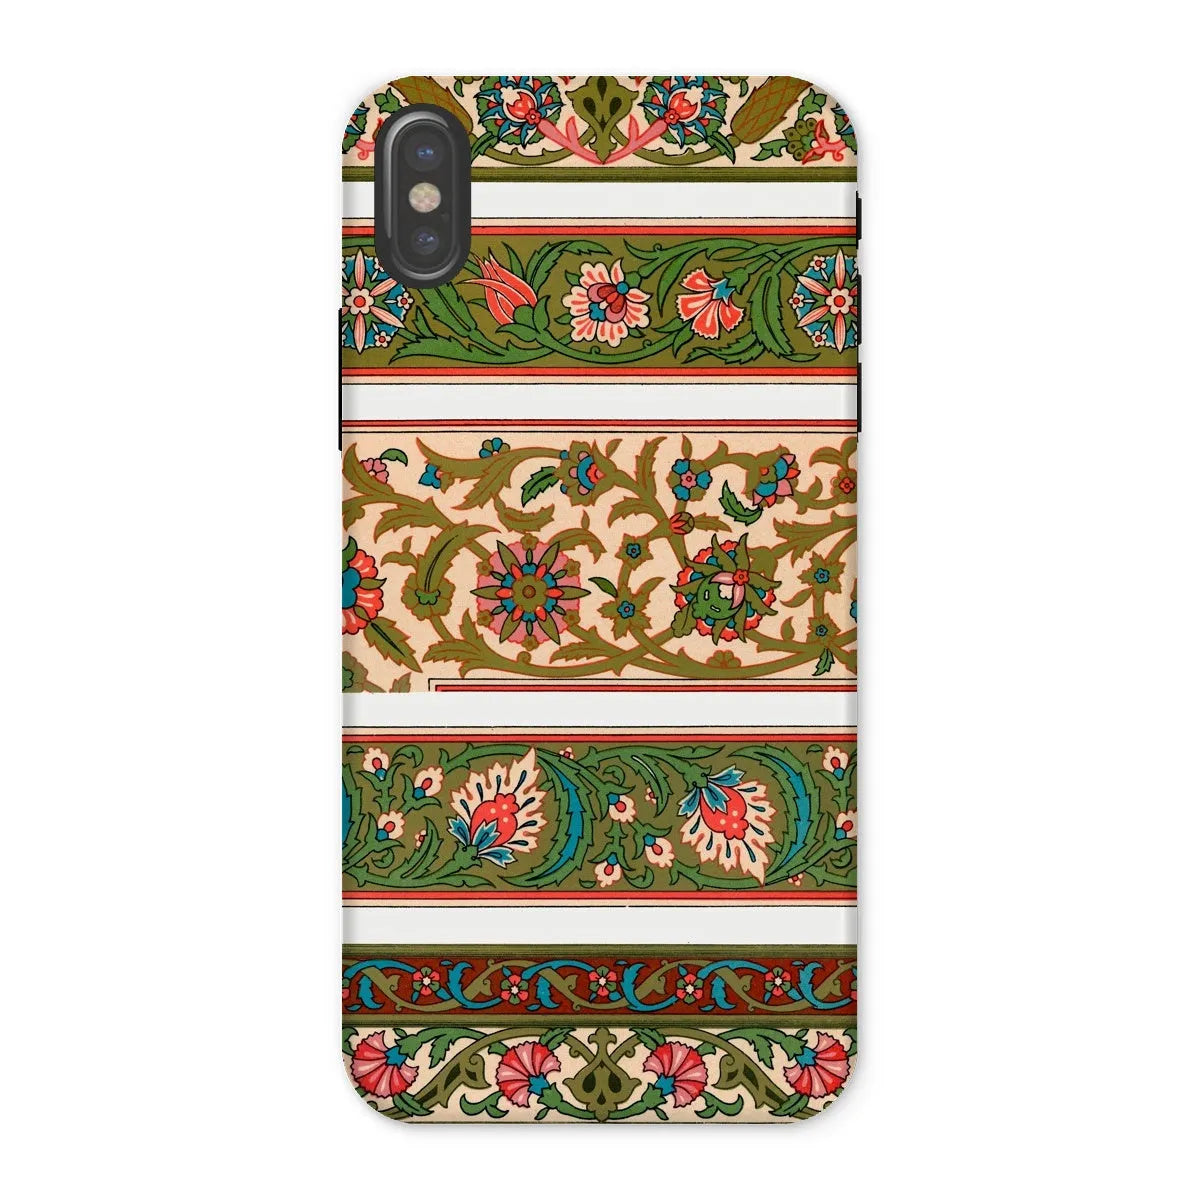 La Decoration Arabe 32 Art Phone Case - Emile Prisse D’avennes - Iphone x / Matte - Mobile Phone Cases - Aesthetic Art